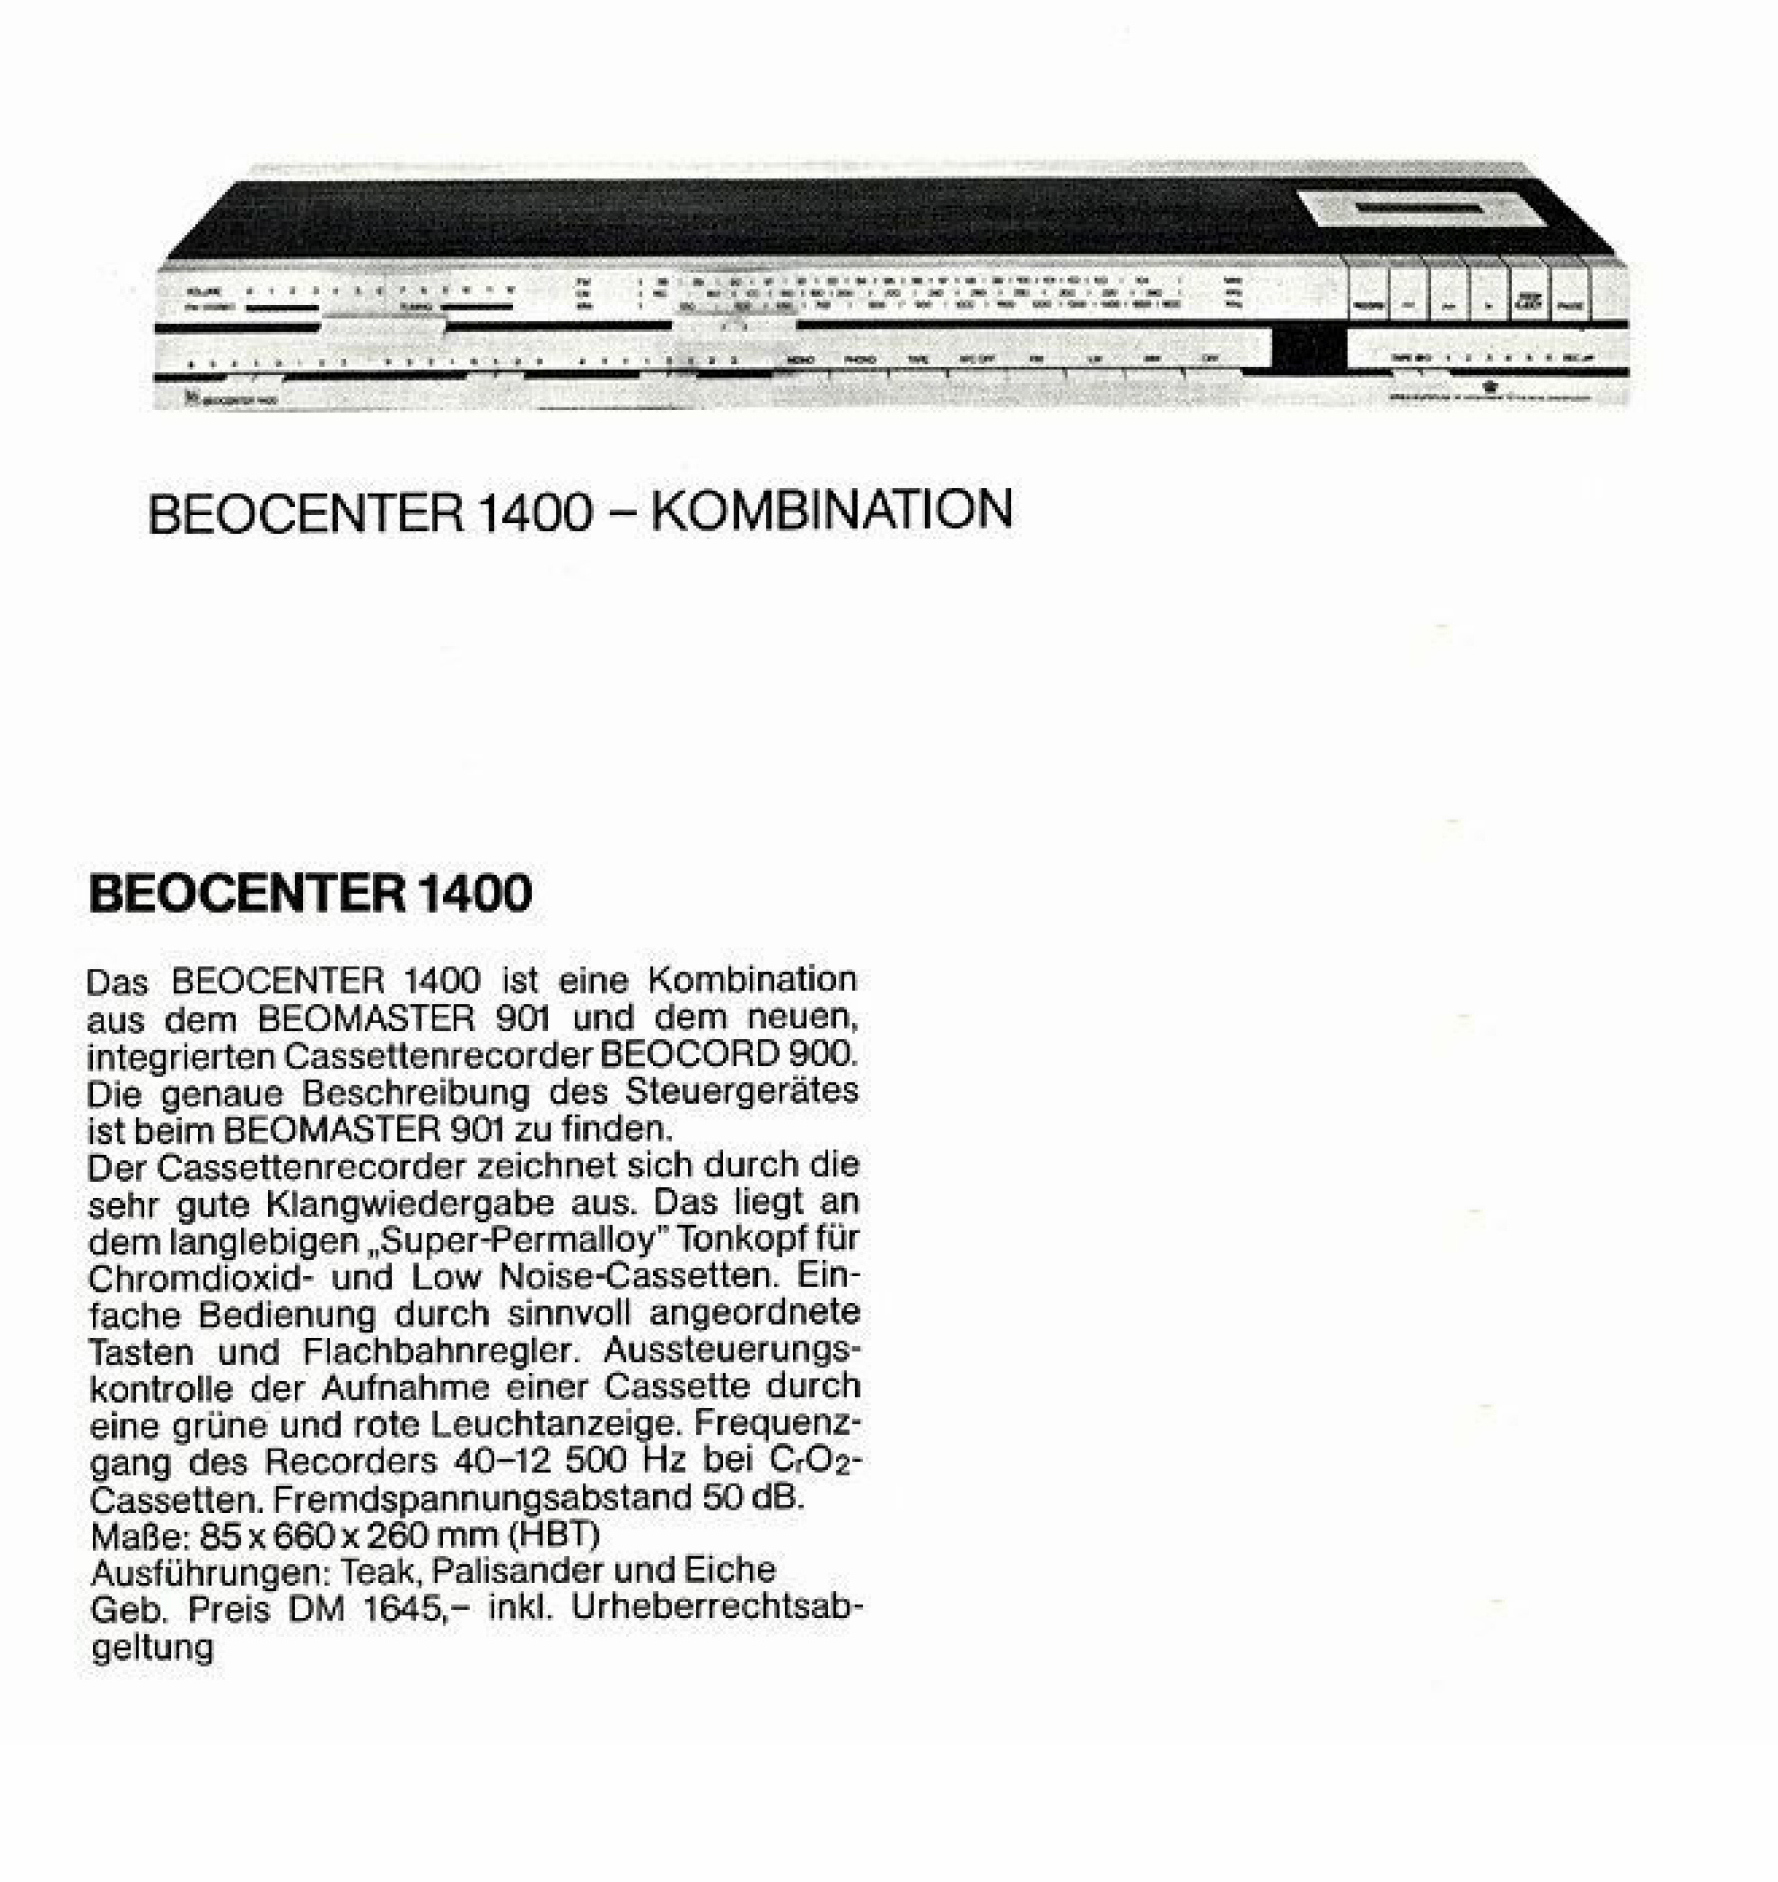 Bang & Olufsen Beocenter 1400-Prospekt-1973.jpg